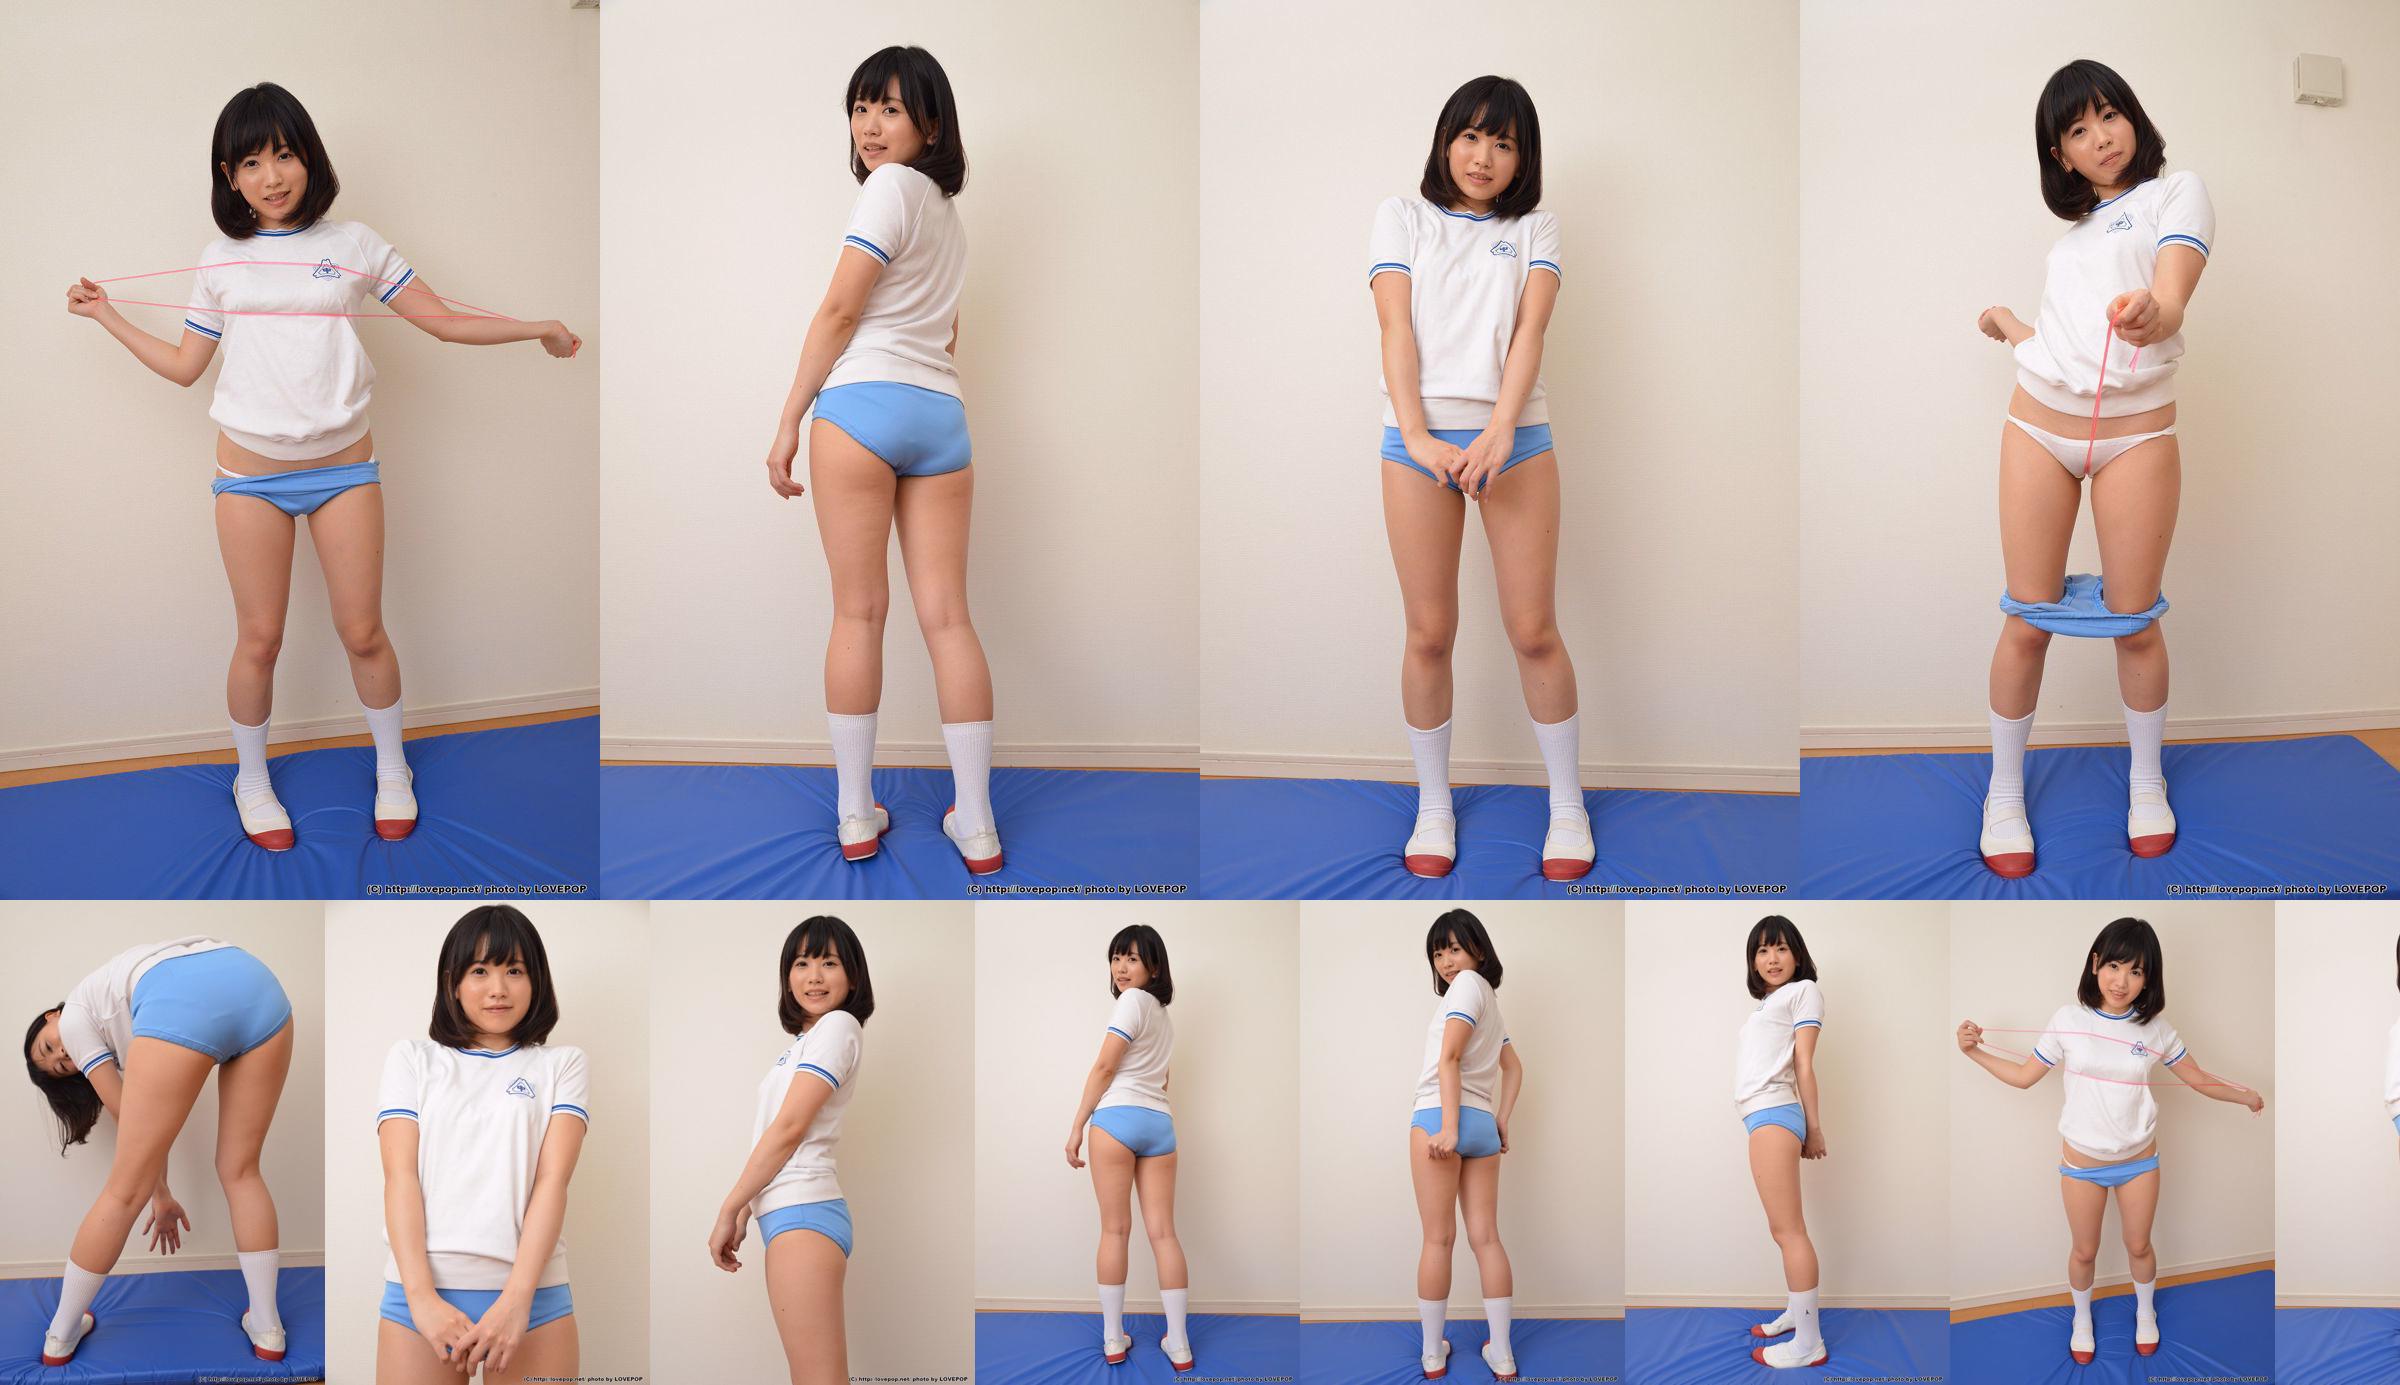 [LOVEPOP] Yuna Kimino Yuna Kimino Photoset 01 No.959d5e Page 3